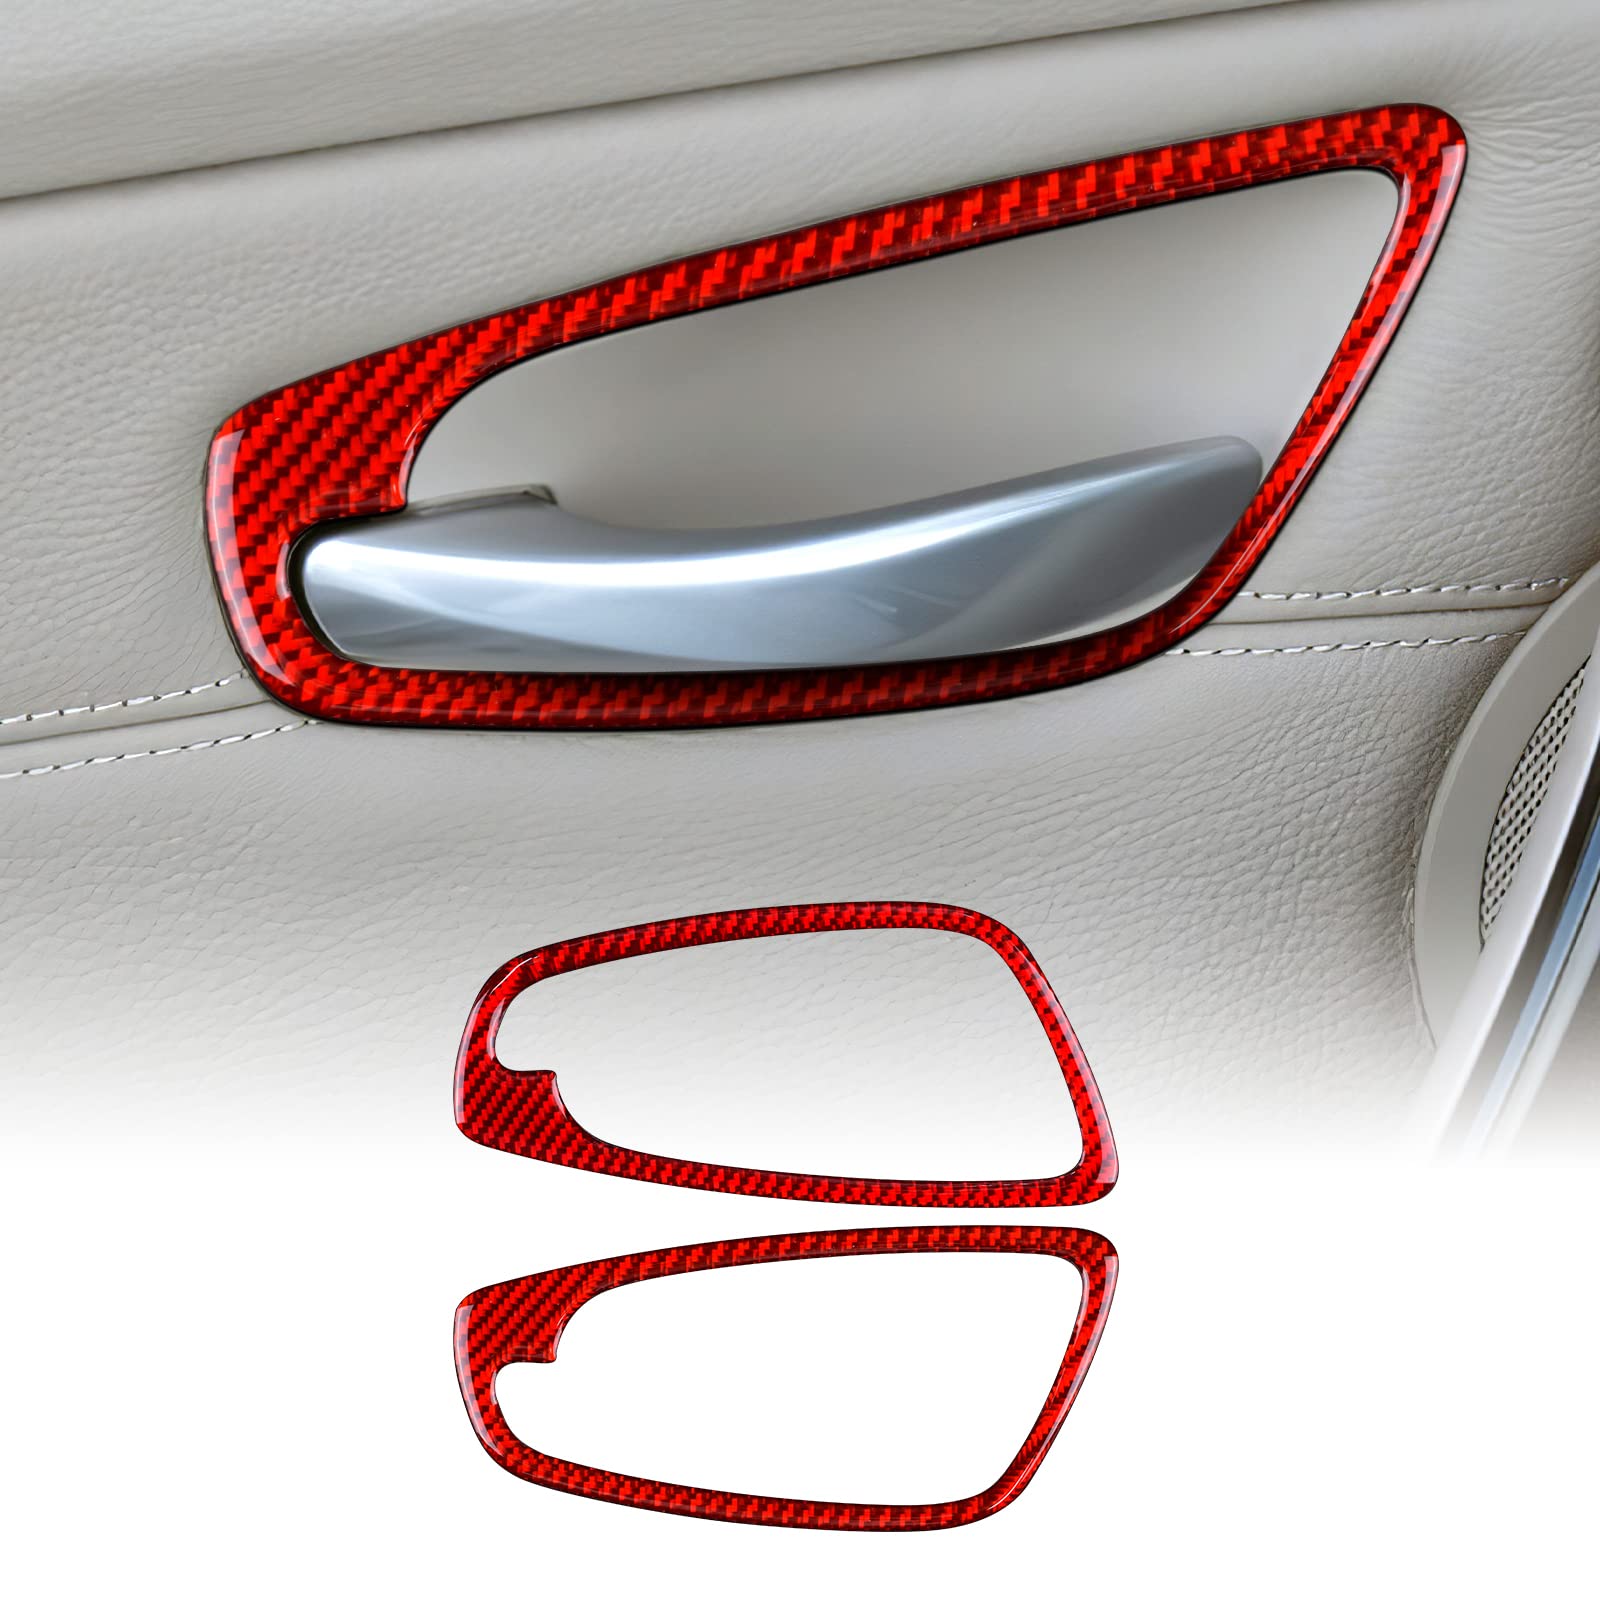 KUNGKIC Kohlefaser Auto-Türgriffrahmen Dekorative Aufkleber Innenbereich Compatible with BMW 1 Serie E81 E82 E87 E88 2008-2013 Zubehör (Rot) von KUNGKIC